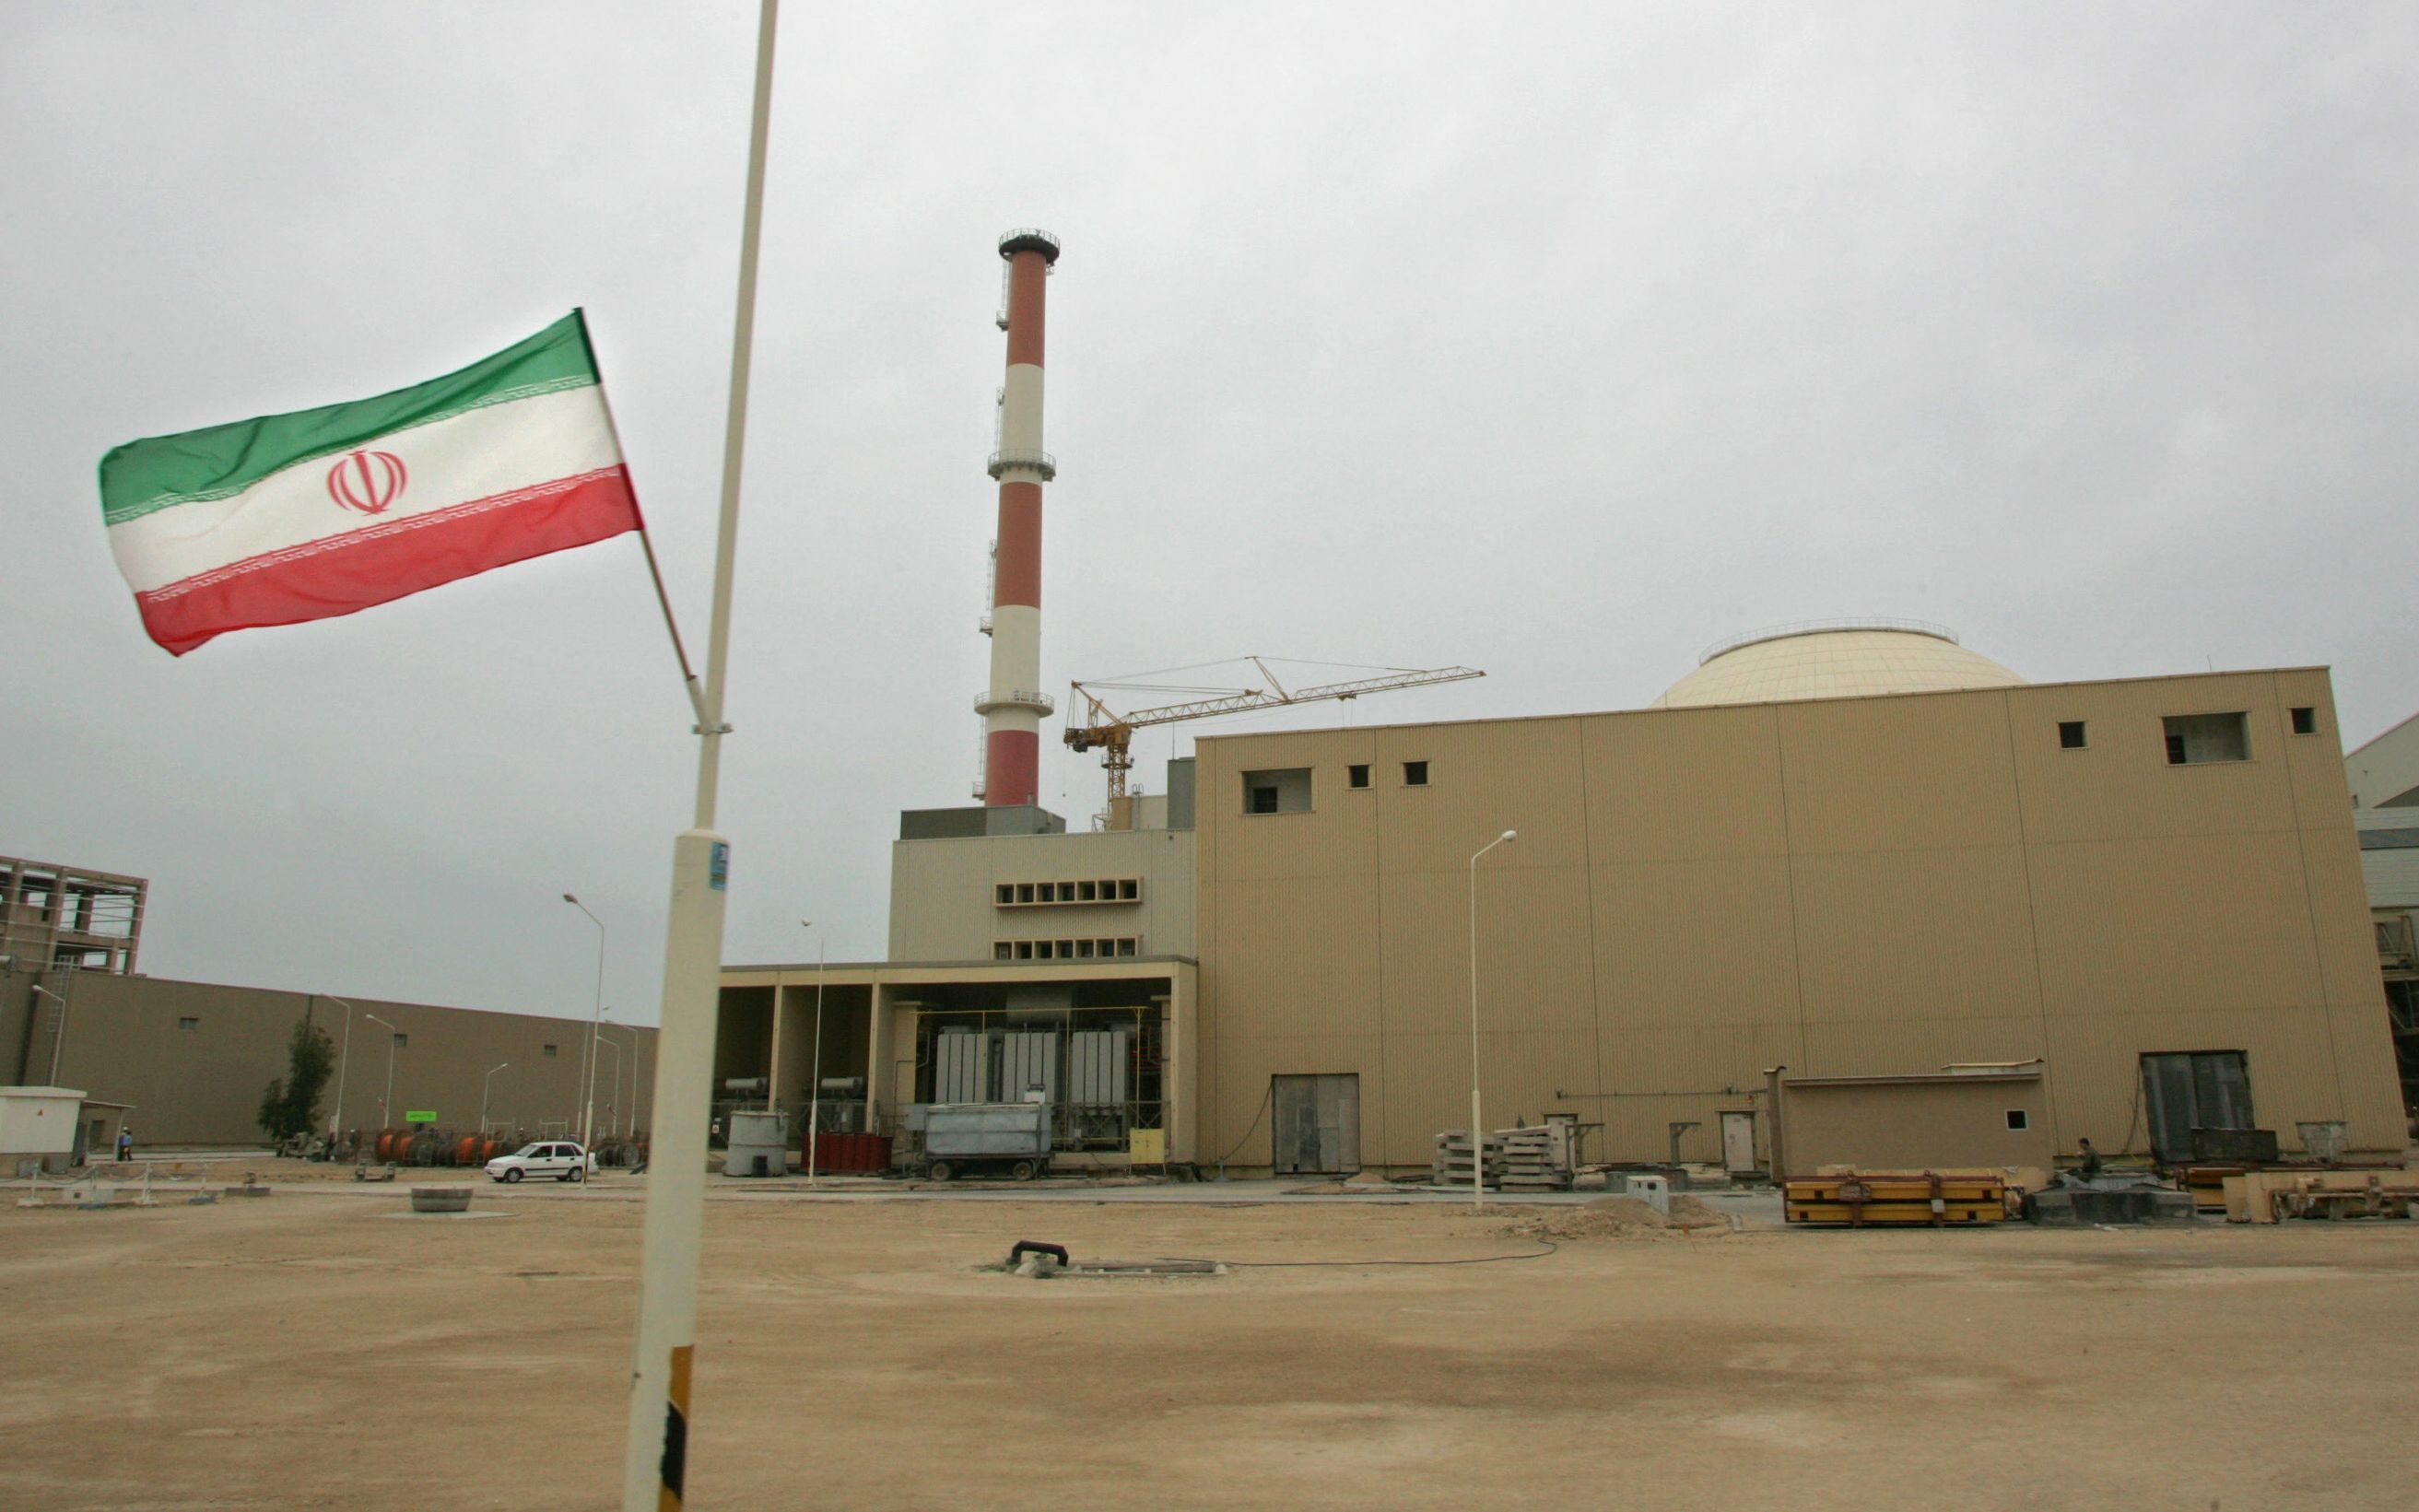 Irán informó hoy a la agencia de Naciones Unidas que supervisa la energía nuclear que aumentará su capacidad de enriquecimiento nuclear